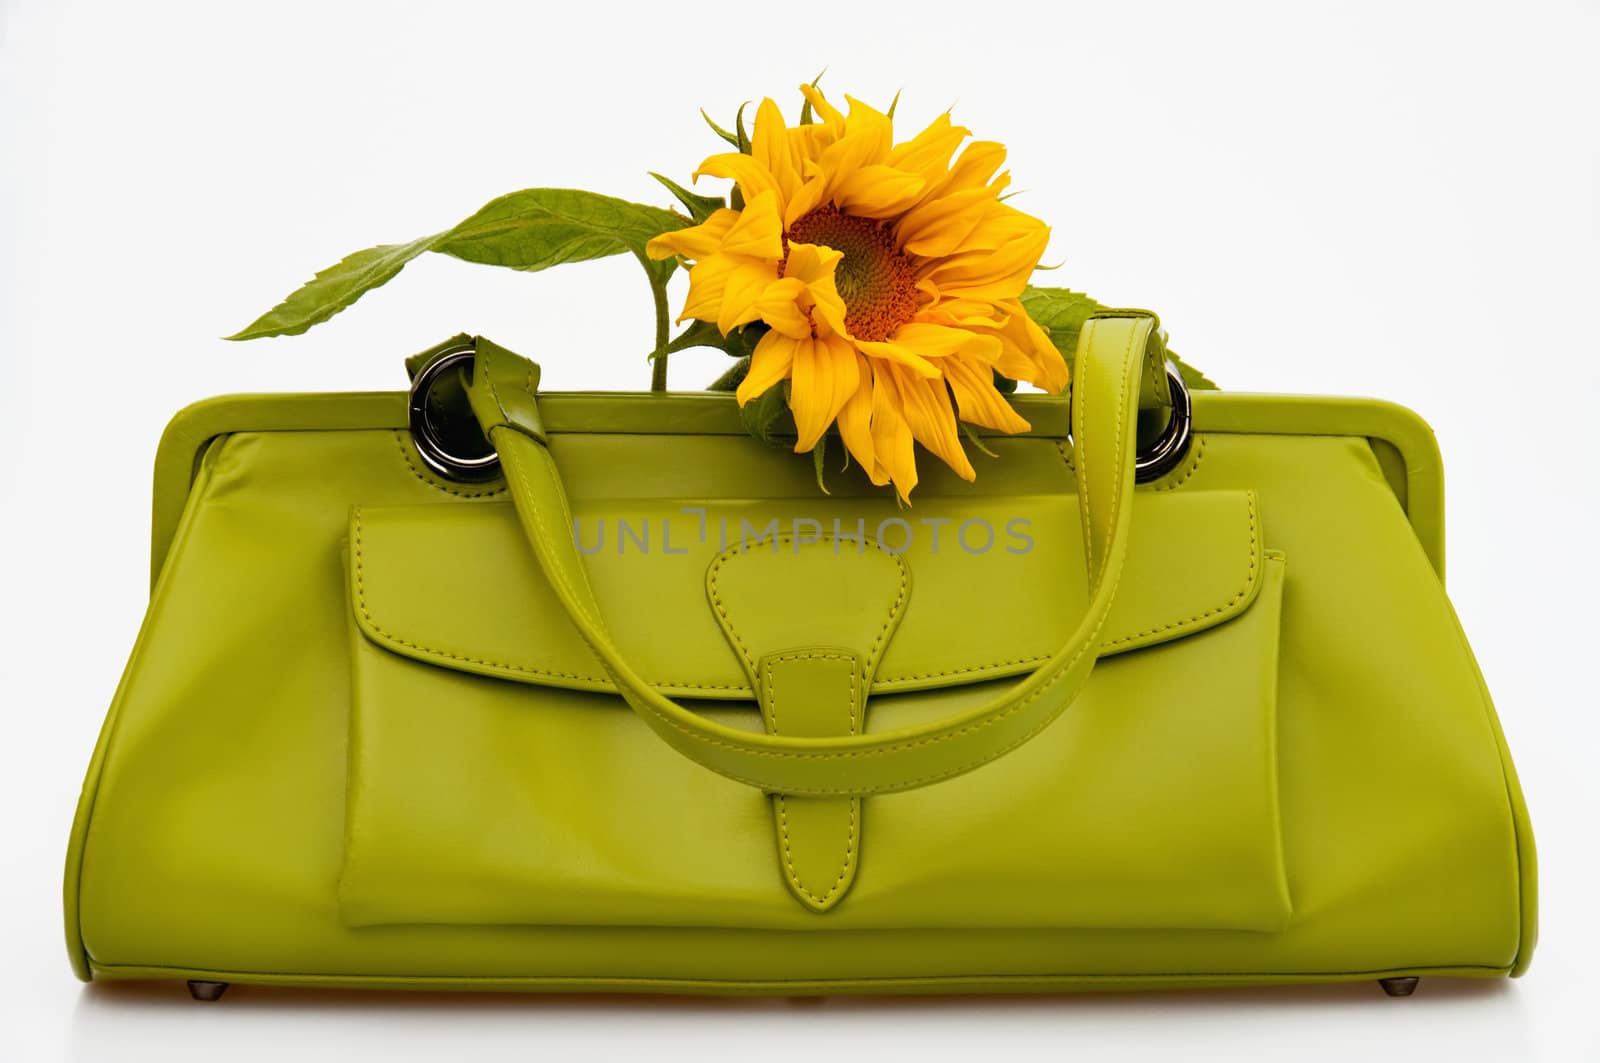 Green handbag by GryT